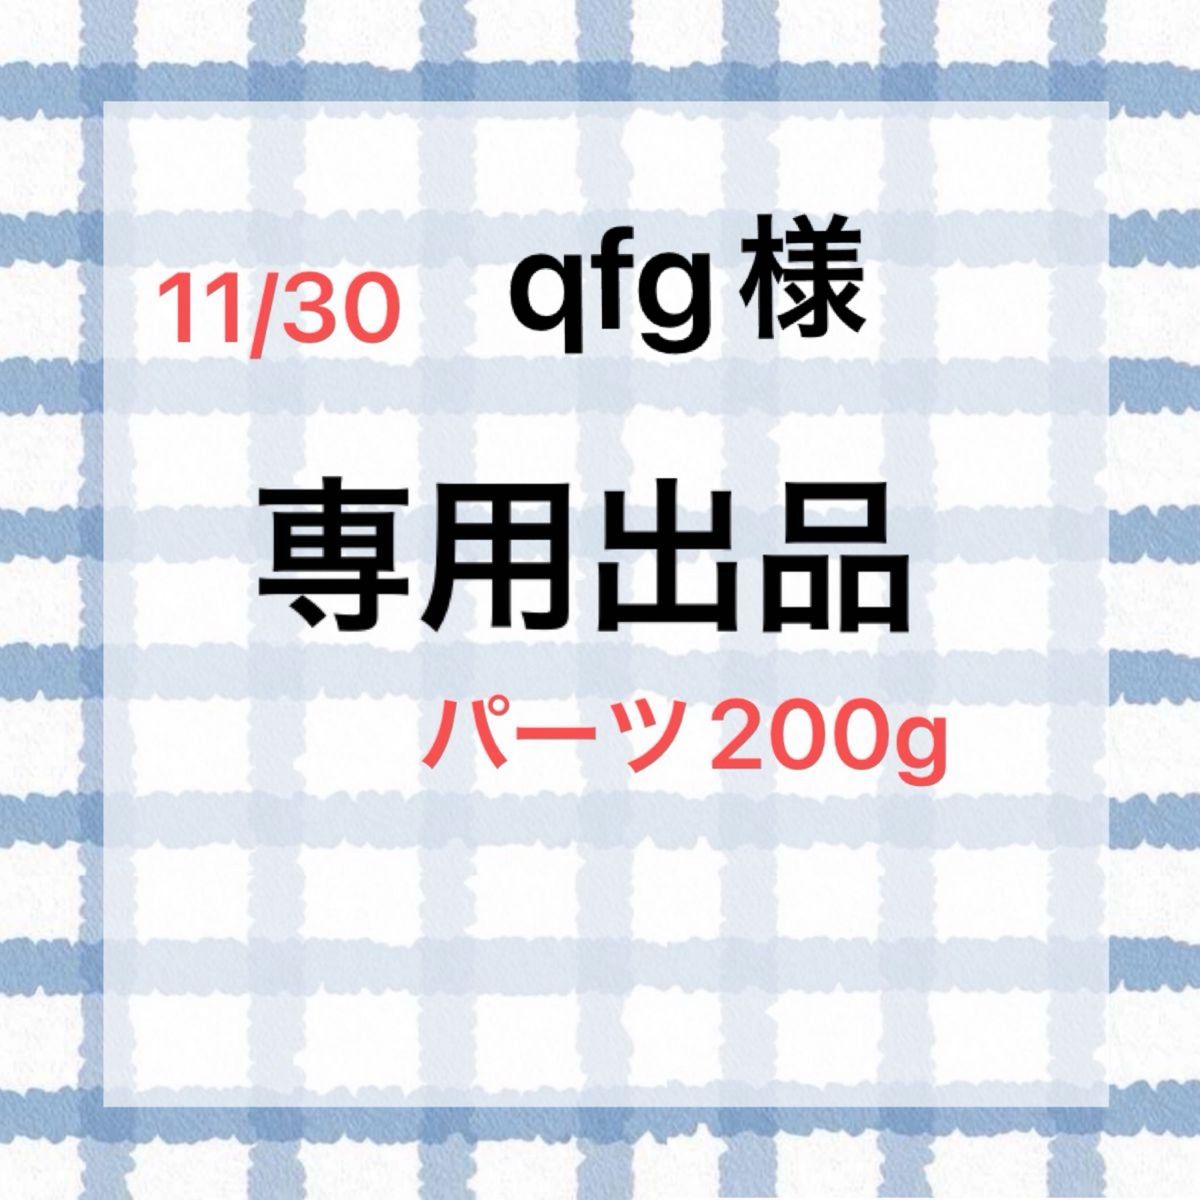 11/30 qfg様専用出品　パーツ200g